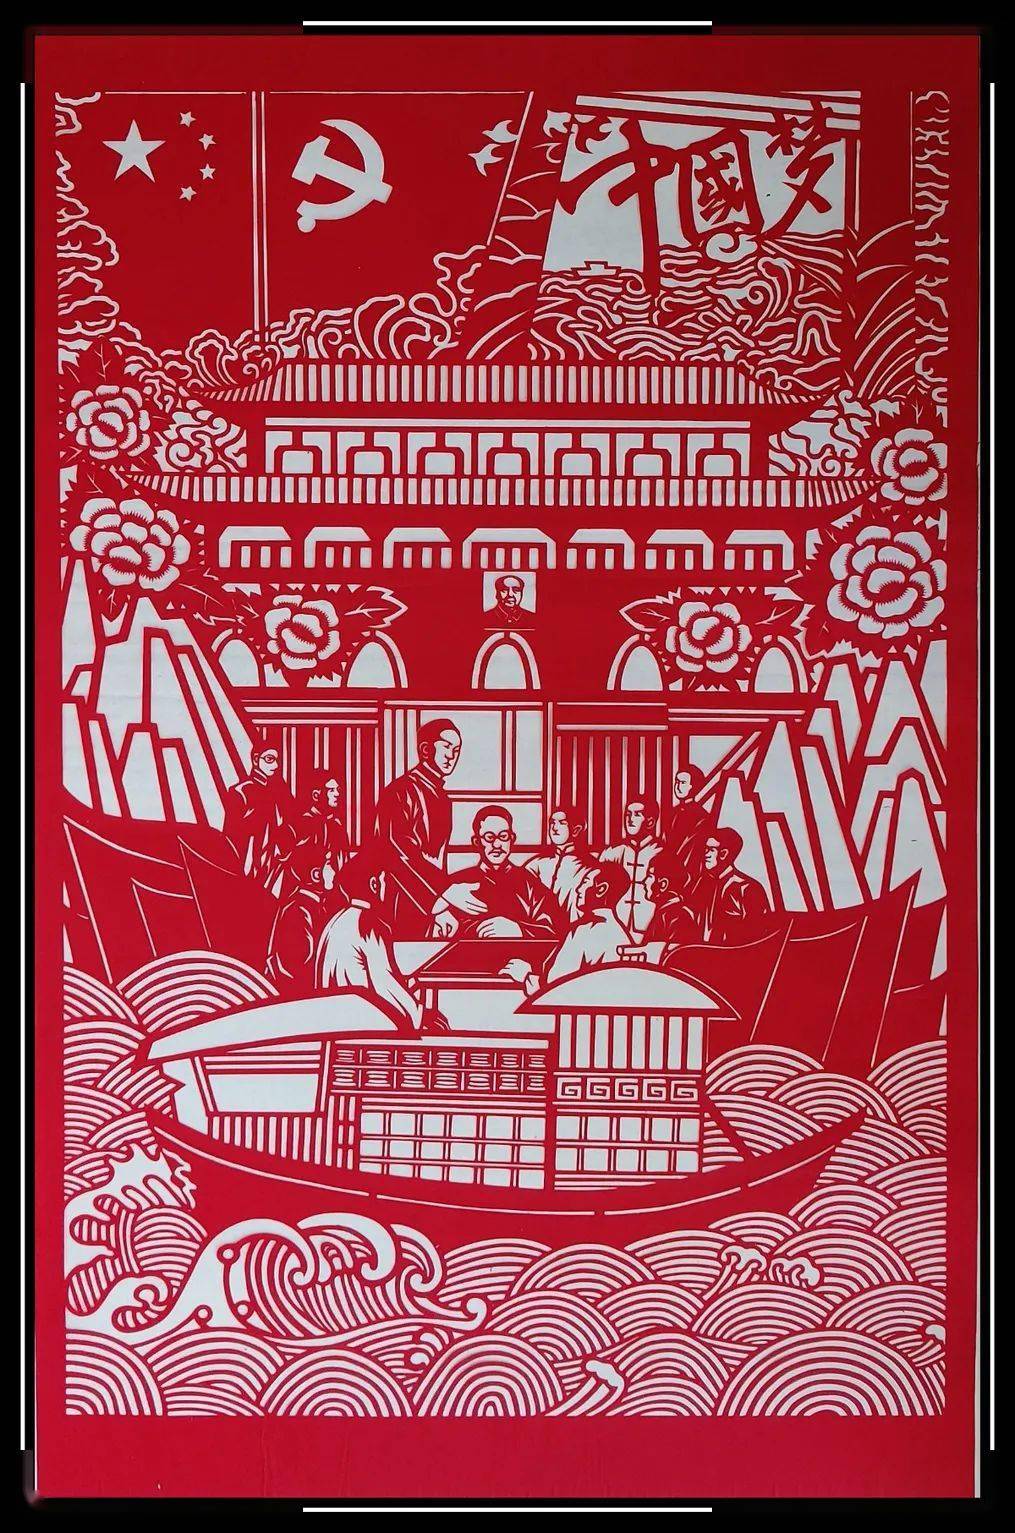 九图微展庆祝中国共产党成立100周年剪纸作品展